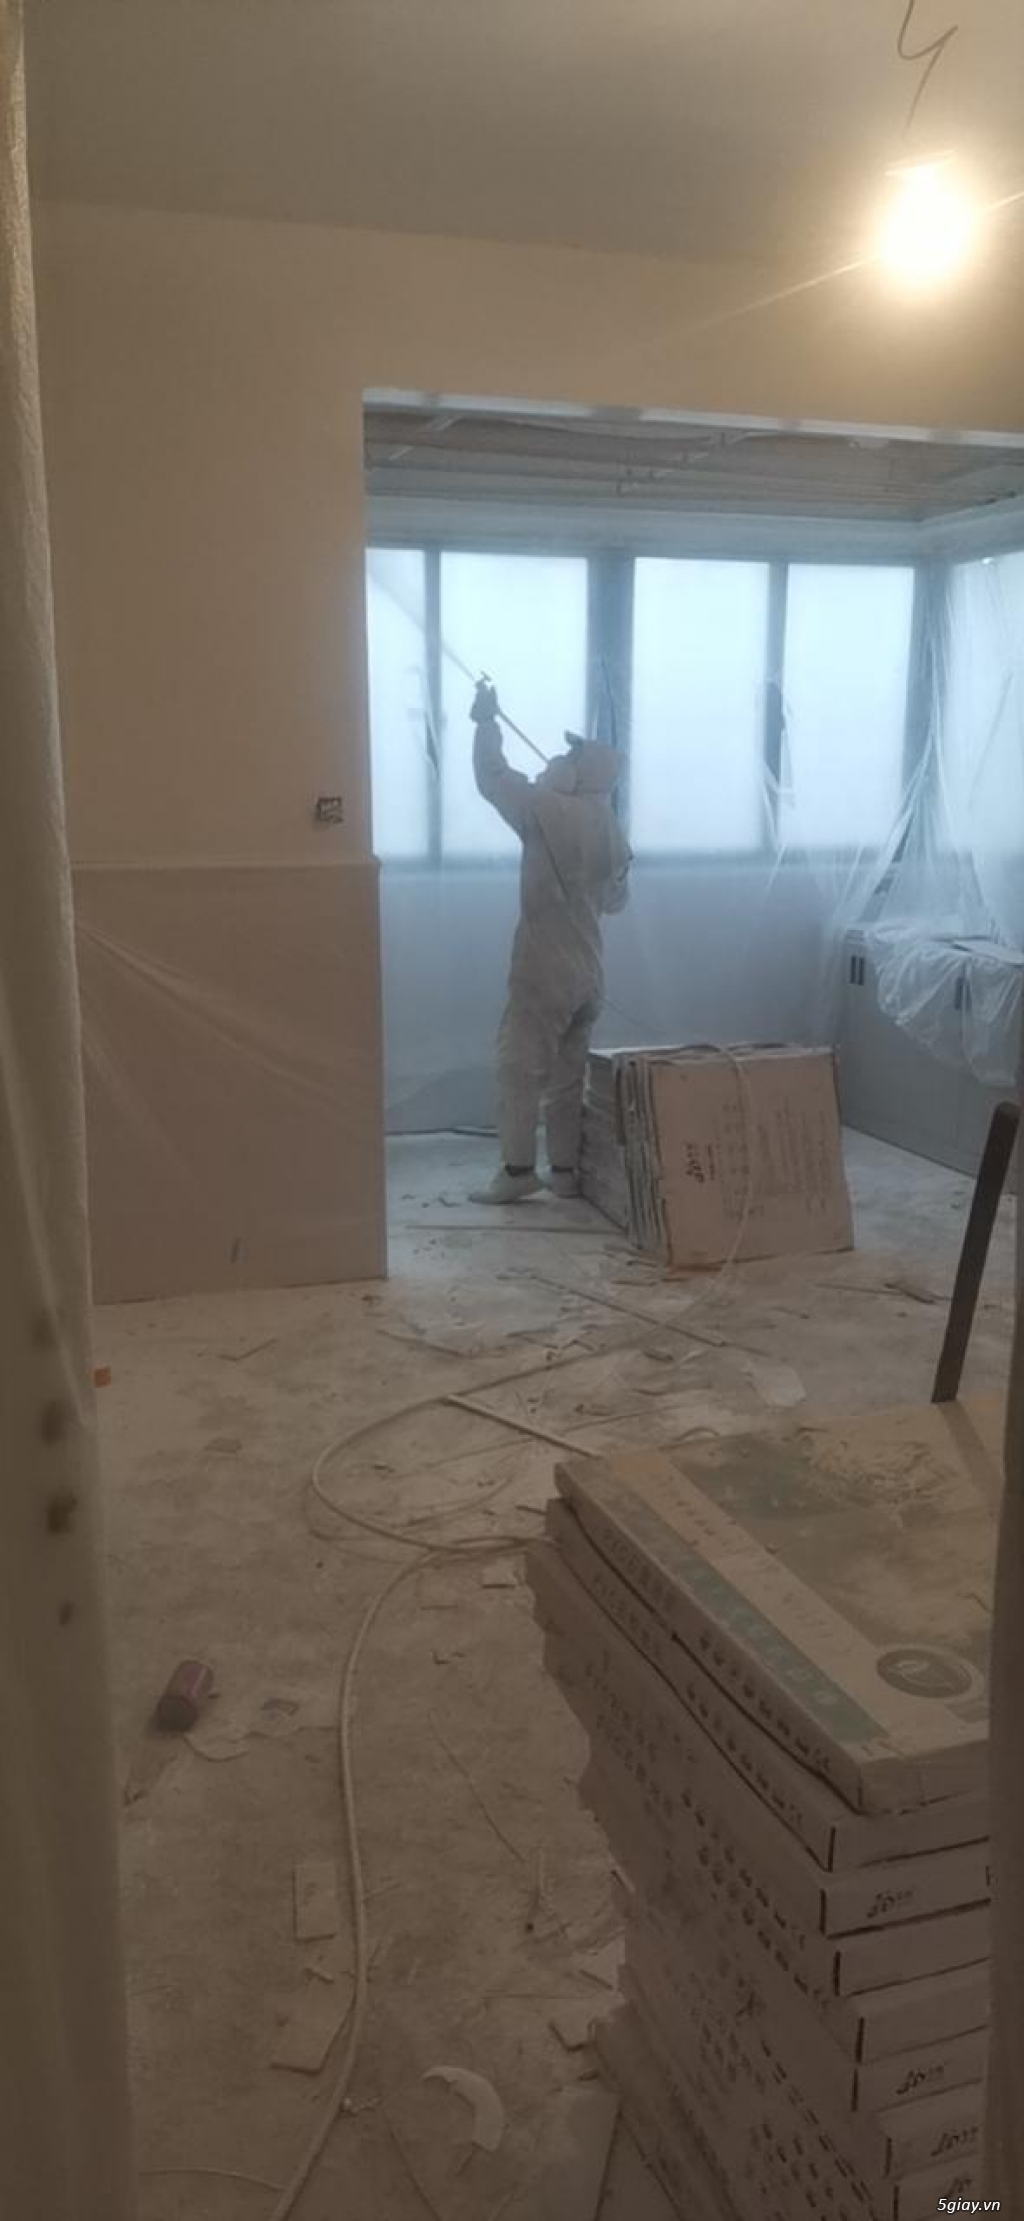 Nhận sơn sửa nhà uy tín chuyên nghiệp tại Hà Nội - 0983533319 - 2